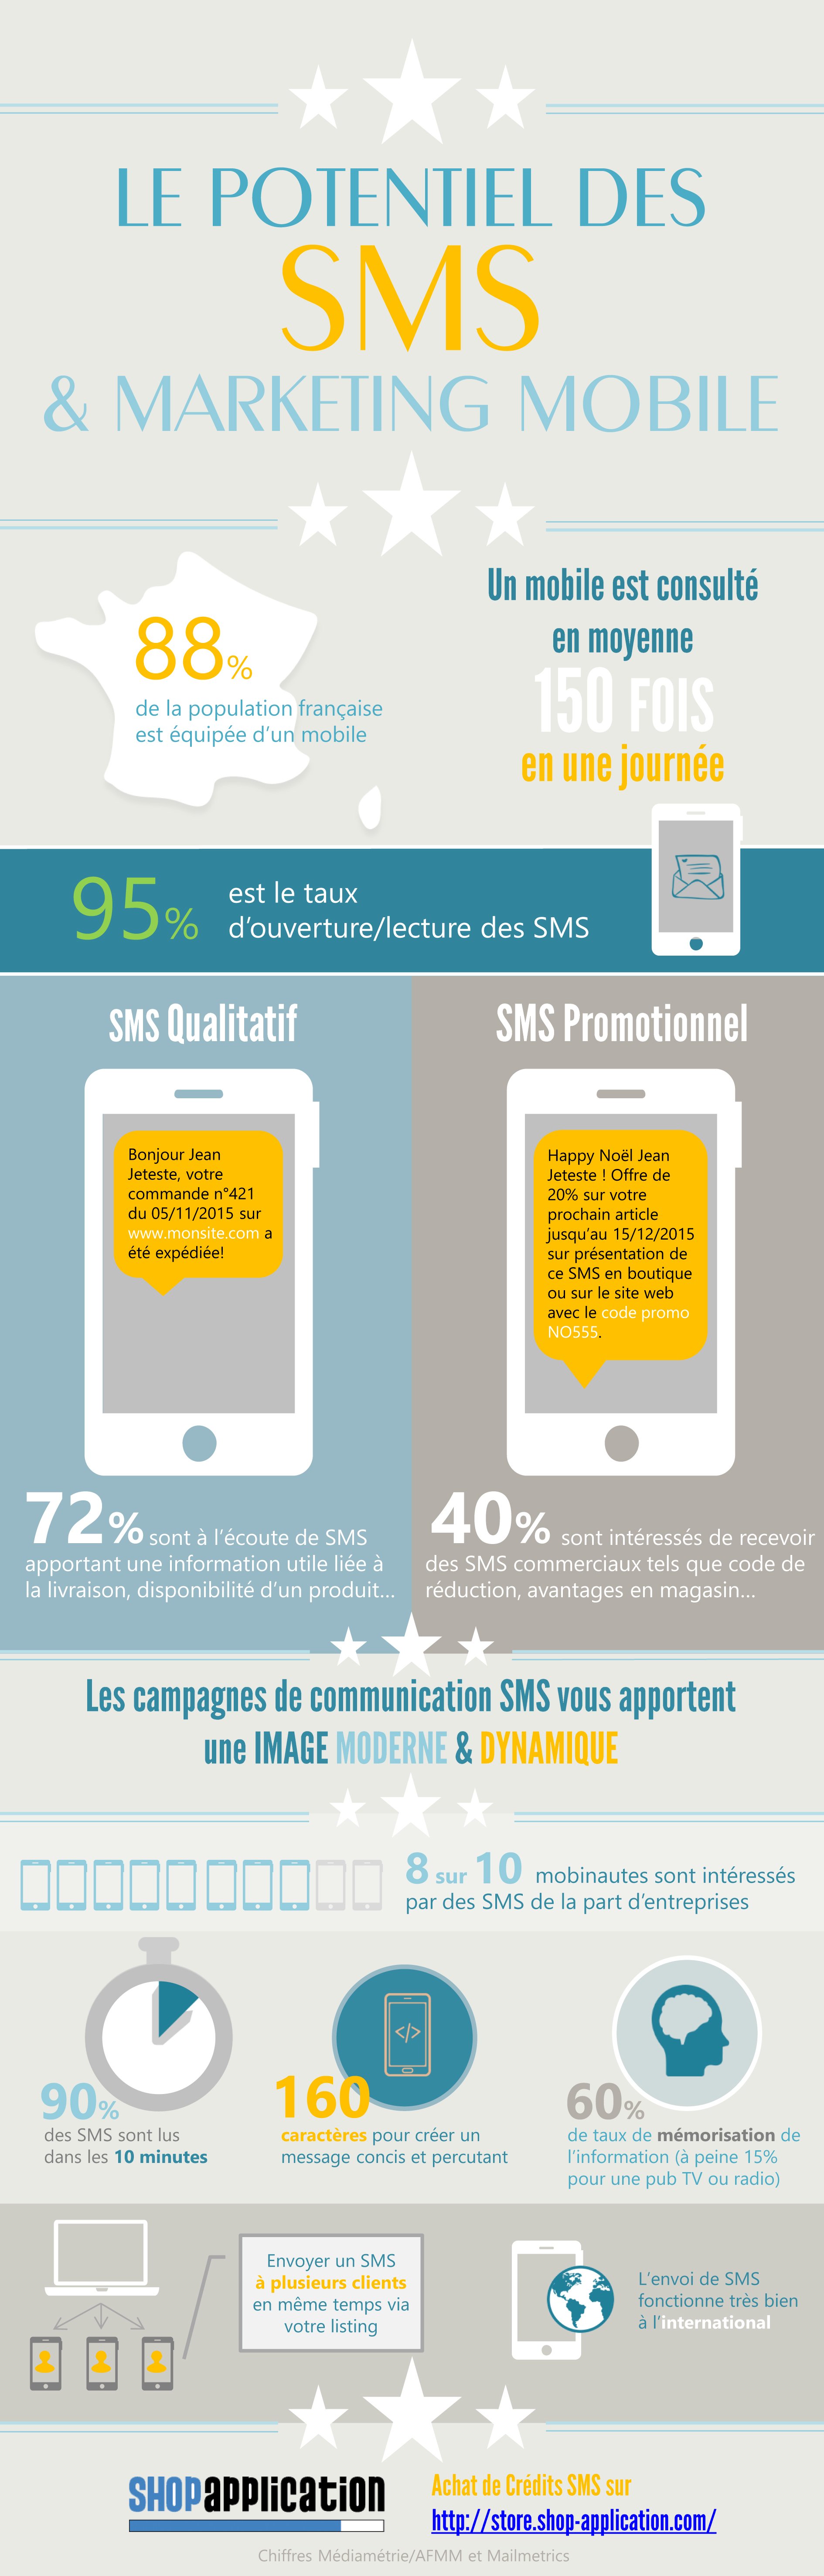 Infographie et chiffres clés sur le potentiel des SMS et marketing Mobile avec Shop Application